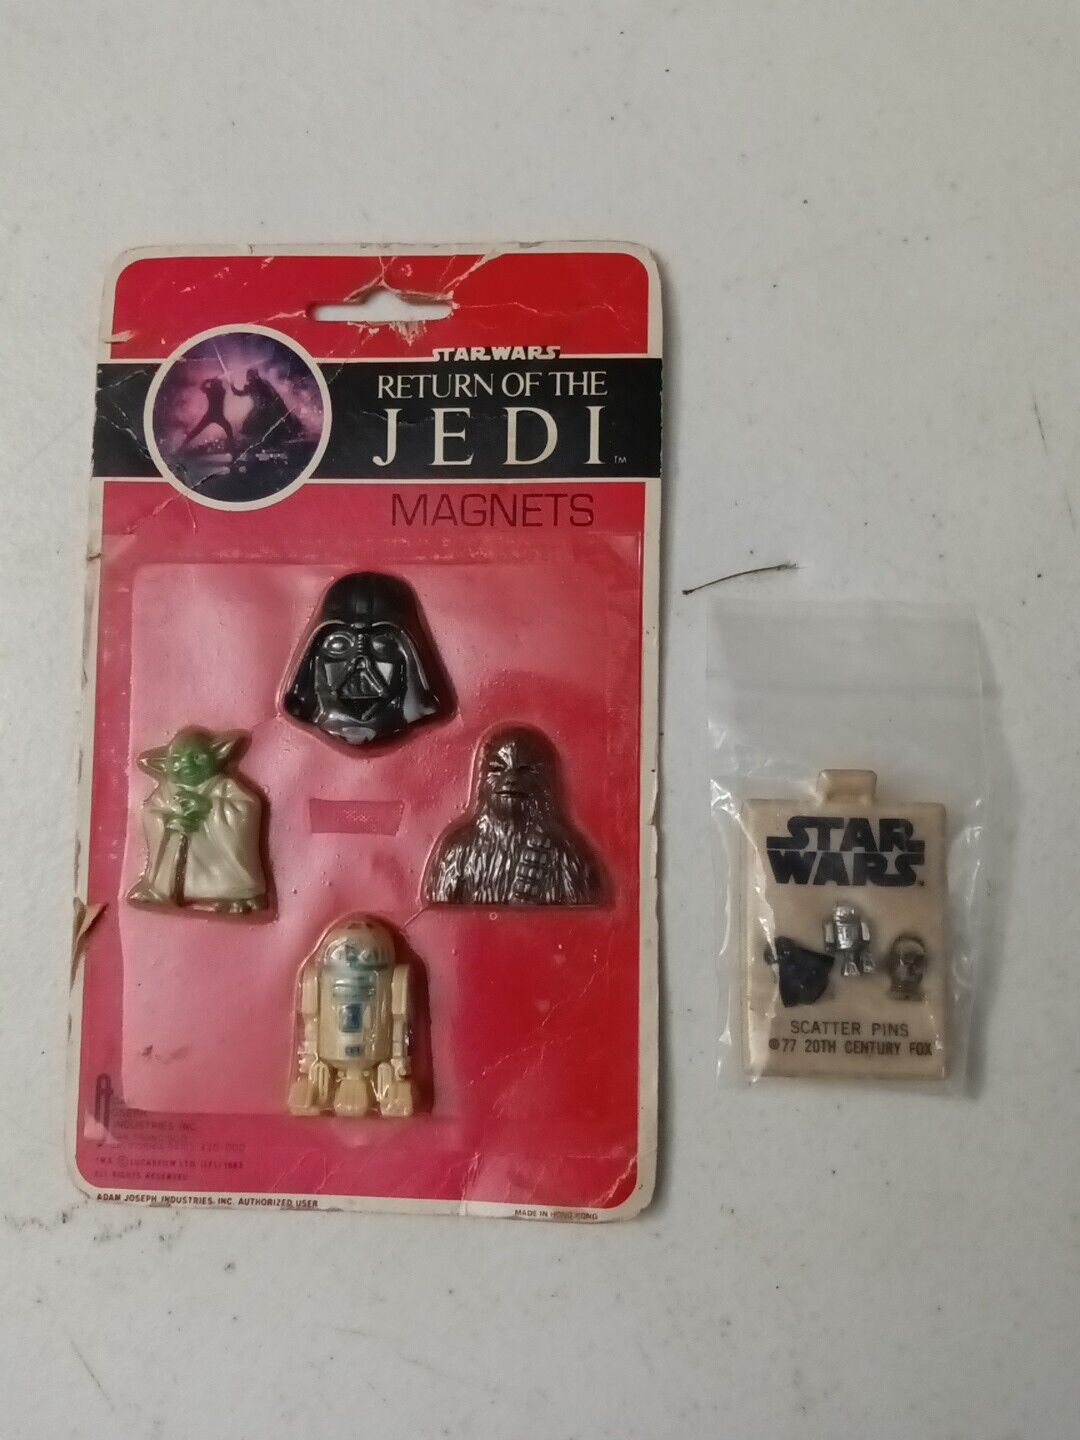 Vintage 1983 Star Wars Return of the Jedi Magnets & Scatter Pins New Vintage 